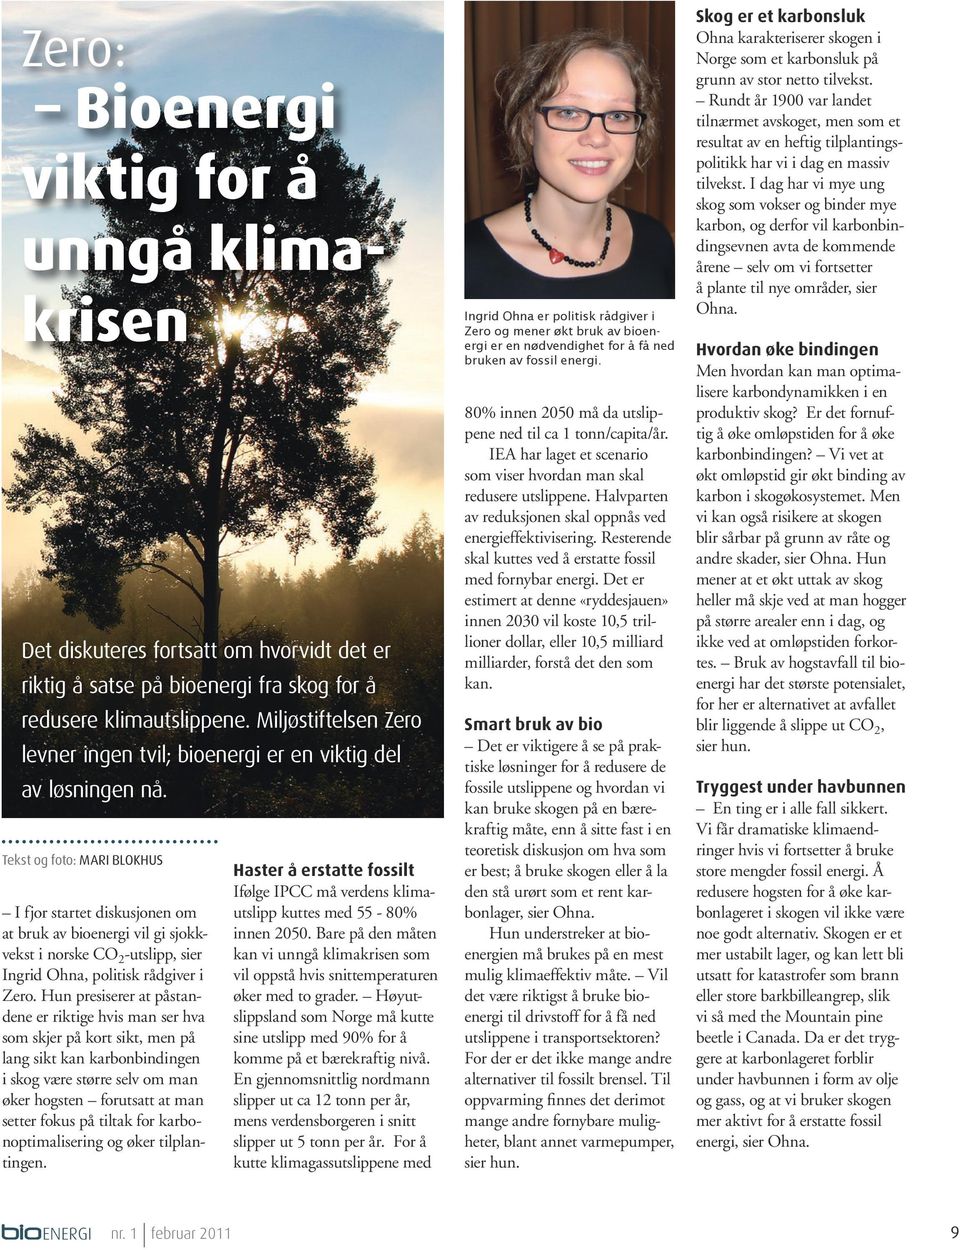 Tekst og foto: MARI BLOKHUS I fjor startet diskusjonen om at bruk av bioenergi vil gi sjokkvekst i norske CO 2 -utslipp, sier Ingrid Ohna, politisk rådgiver i Zero.